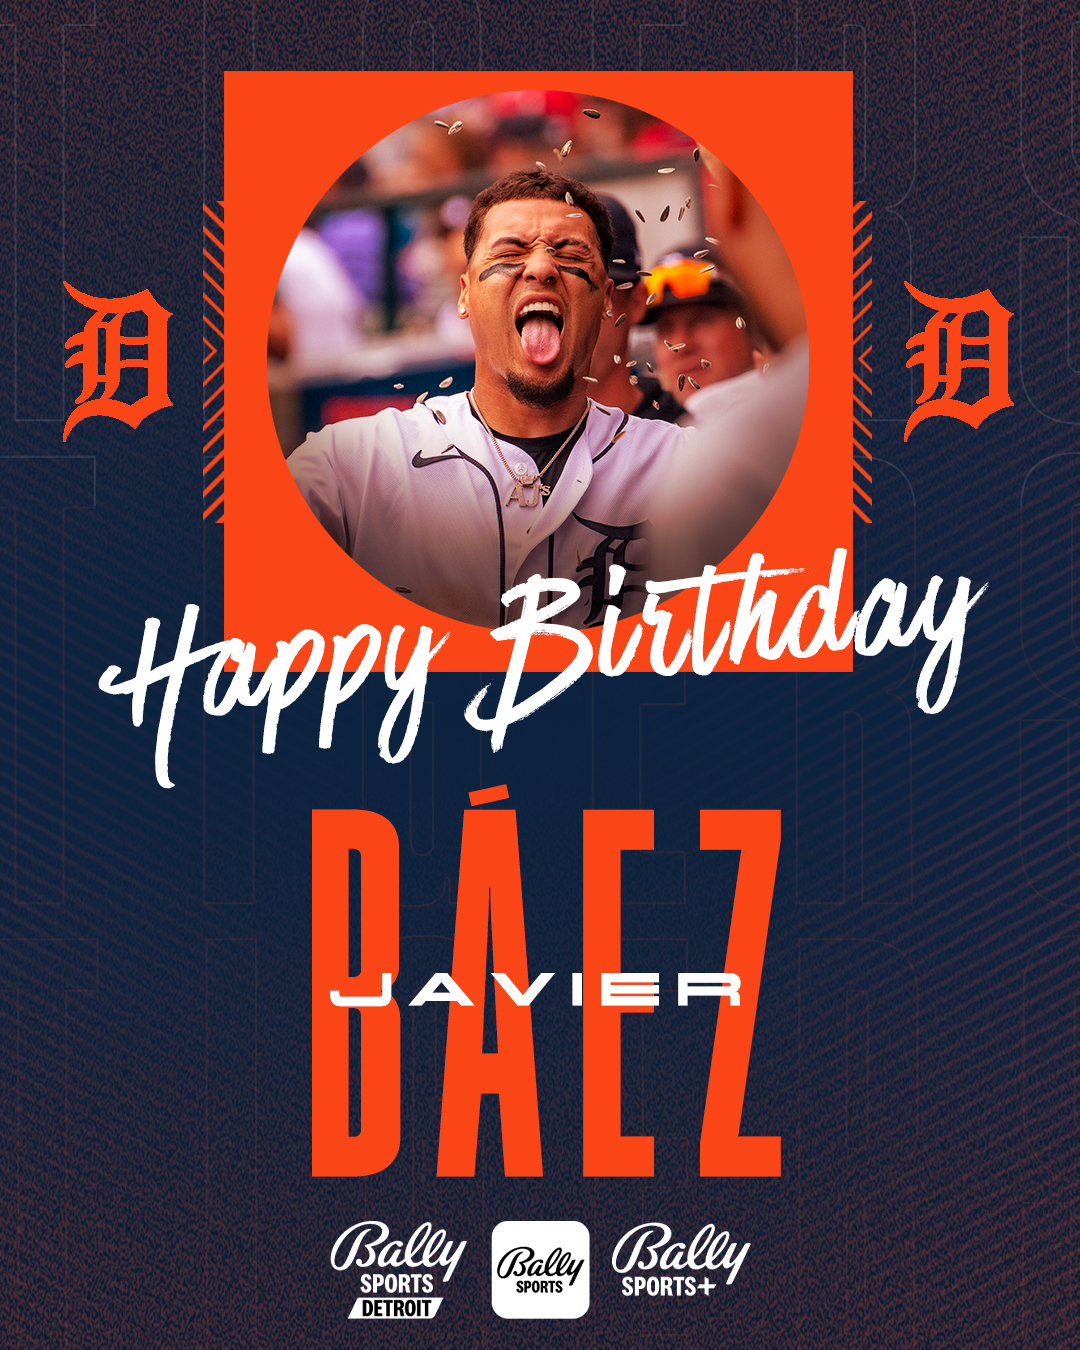 Bally Sports Detroit on X: Happy birthday to Javier Báez! Hope